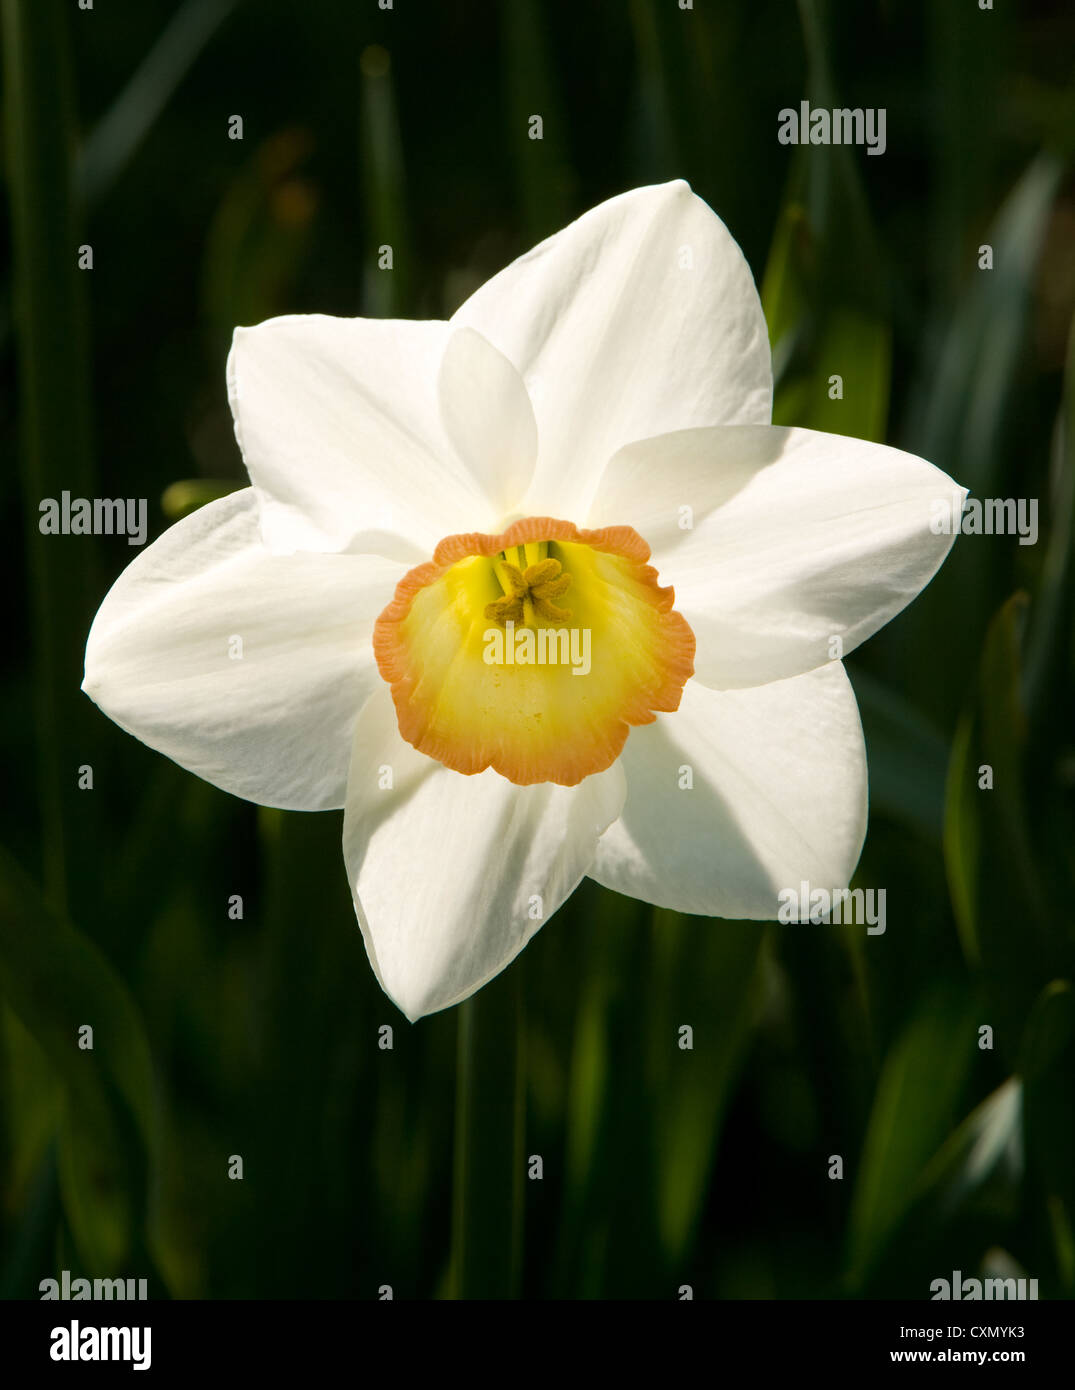 Tête de fleur d'un beau narcisse blanc daffodil avec une trompette orange centre Banque D'Images